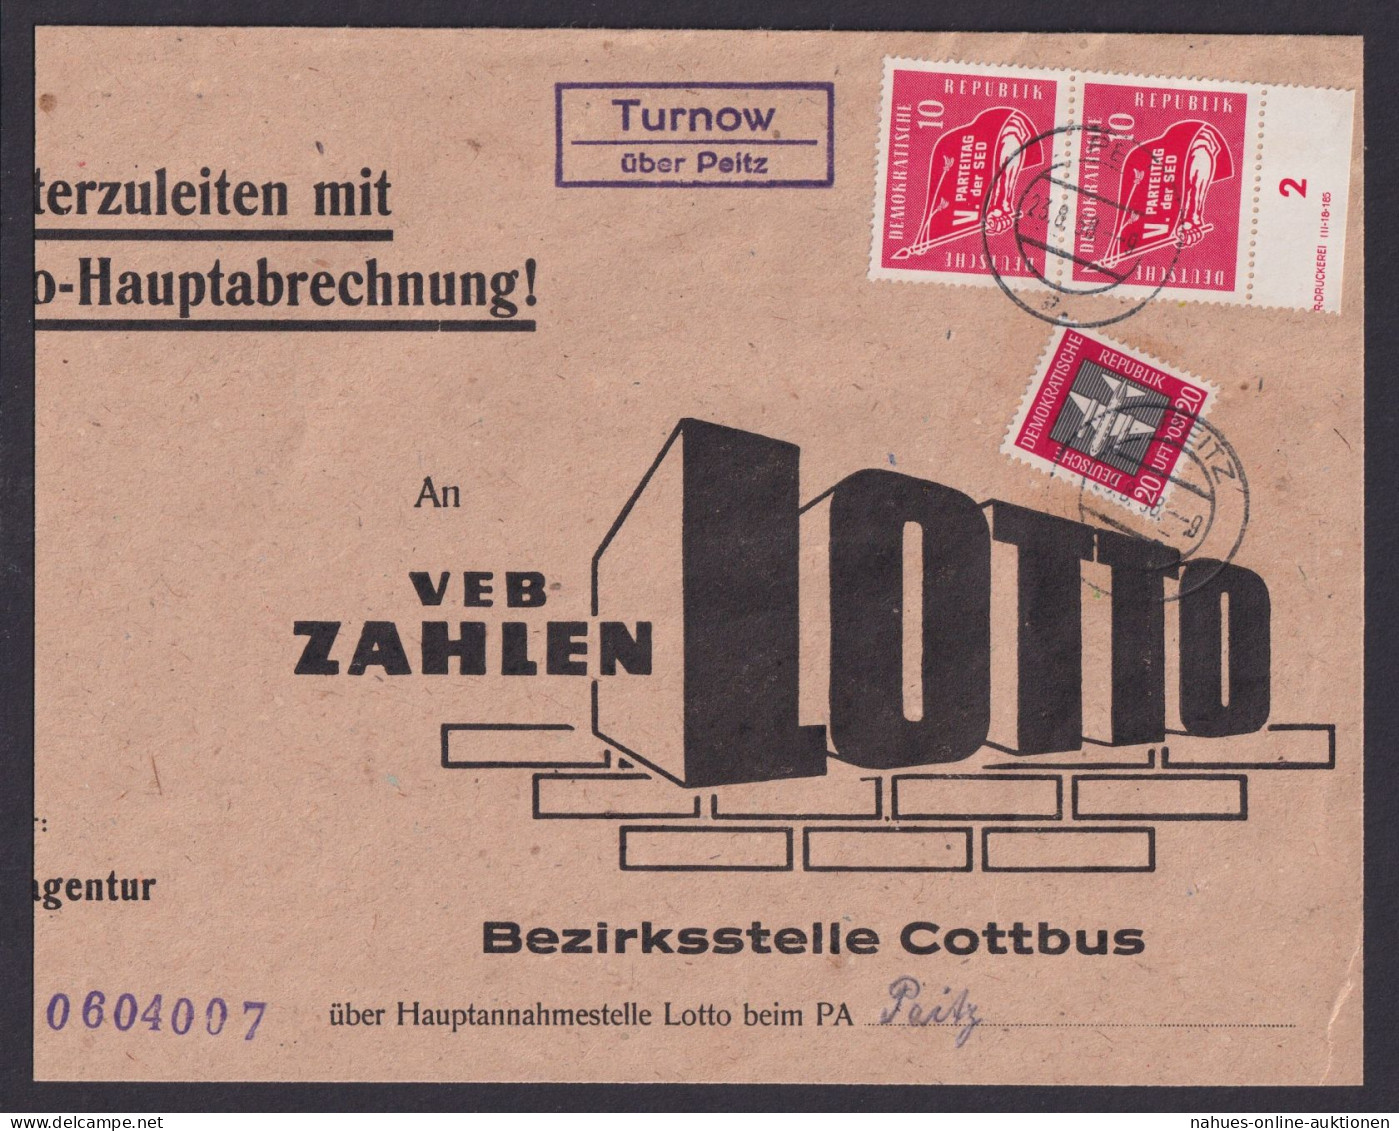 Turnow über Peitz Brandenburg DDR Brief Landpoststempel Zusammendruck Bogenrand - Covers & Documents